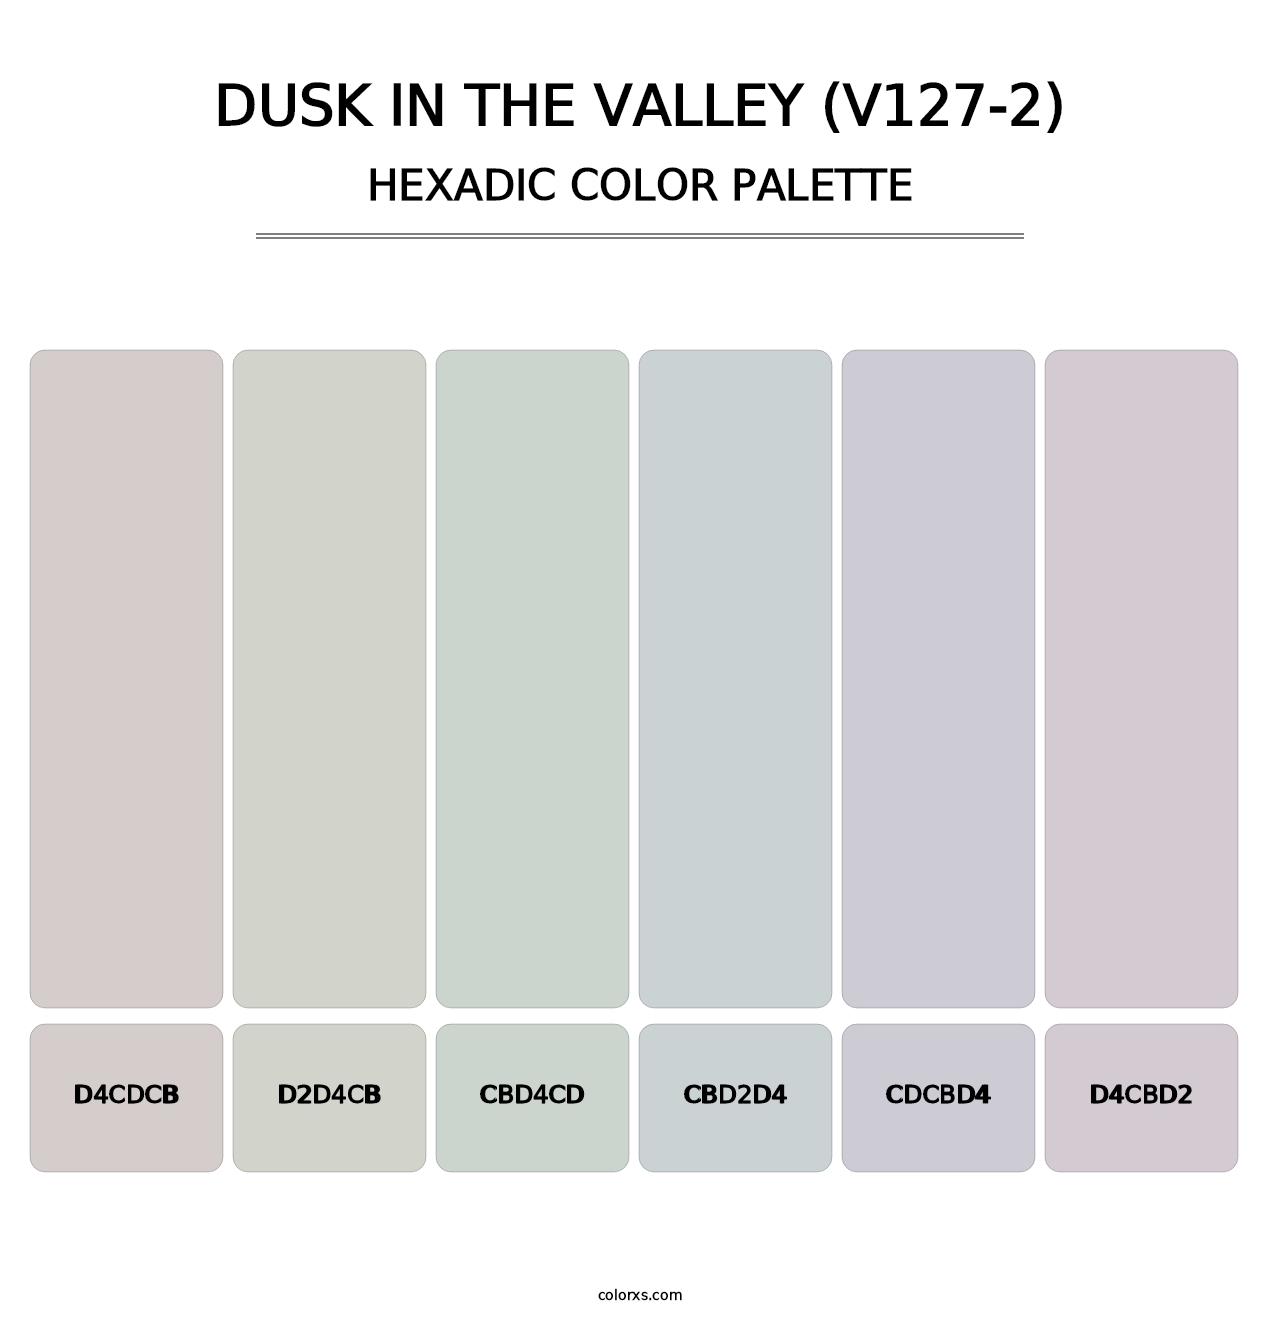 Dusk in the Valley (V127-2) - Hexadic Color Palette